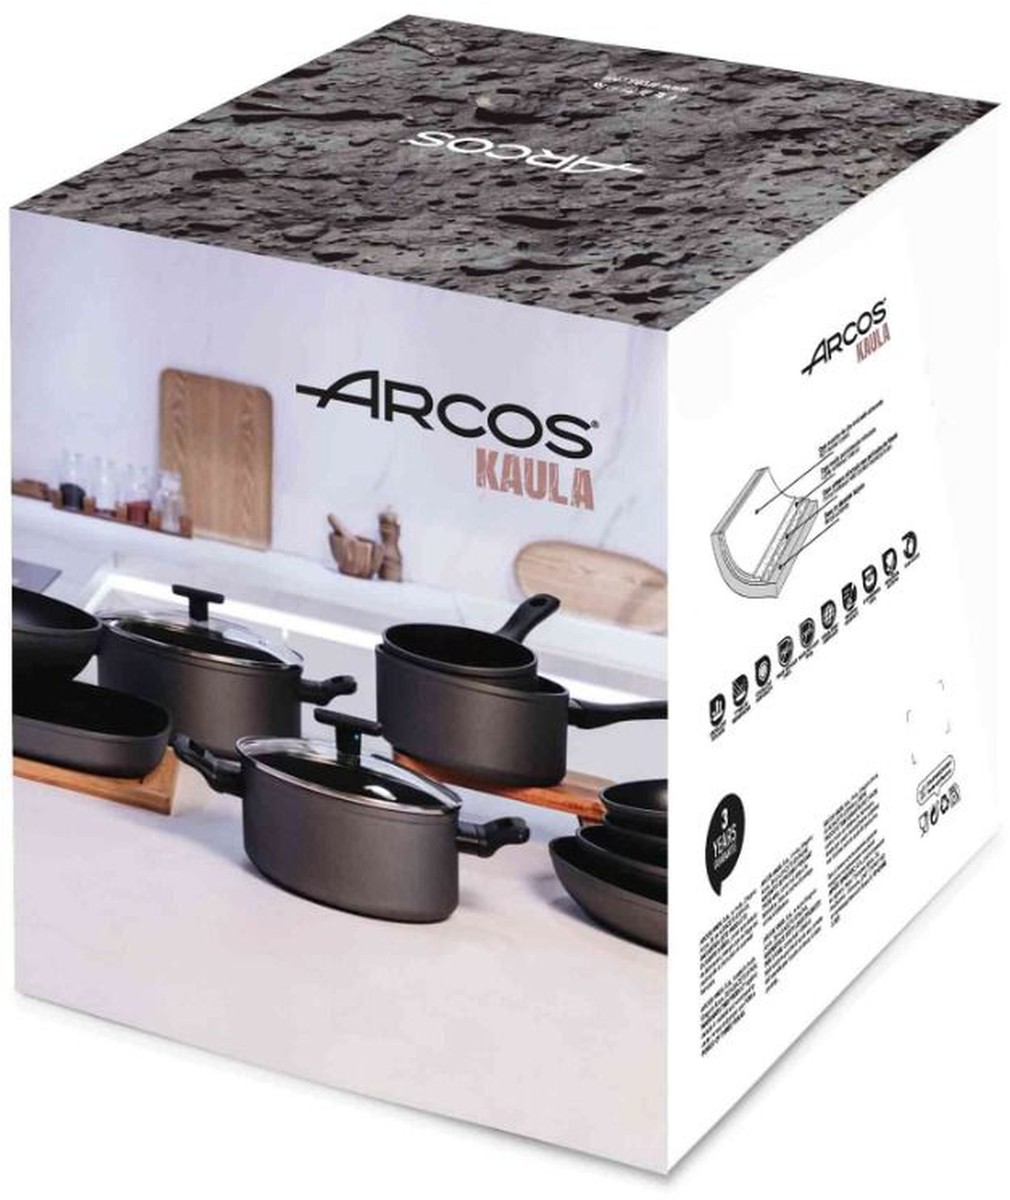 Tijeras de Cocina - Tijeras de Cocina Arcos Serie Prochef hechas de acero  inoxidable y Polipropileno.